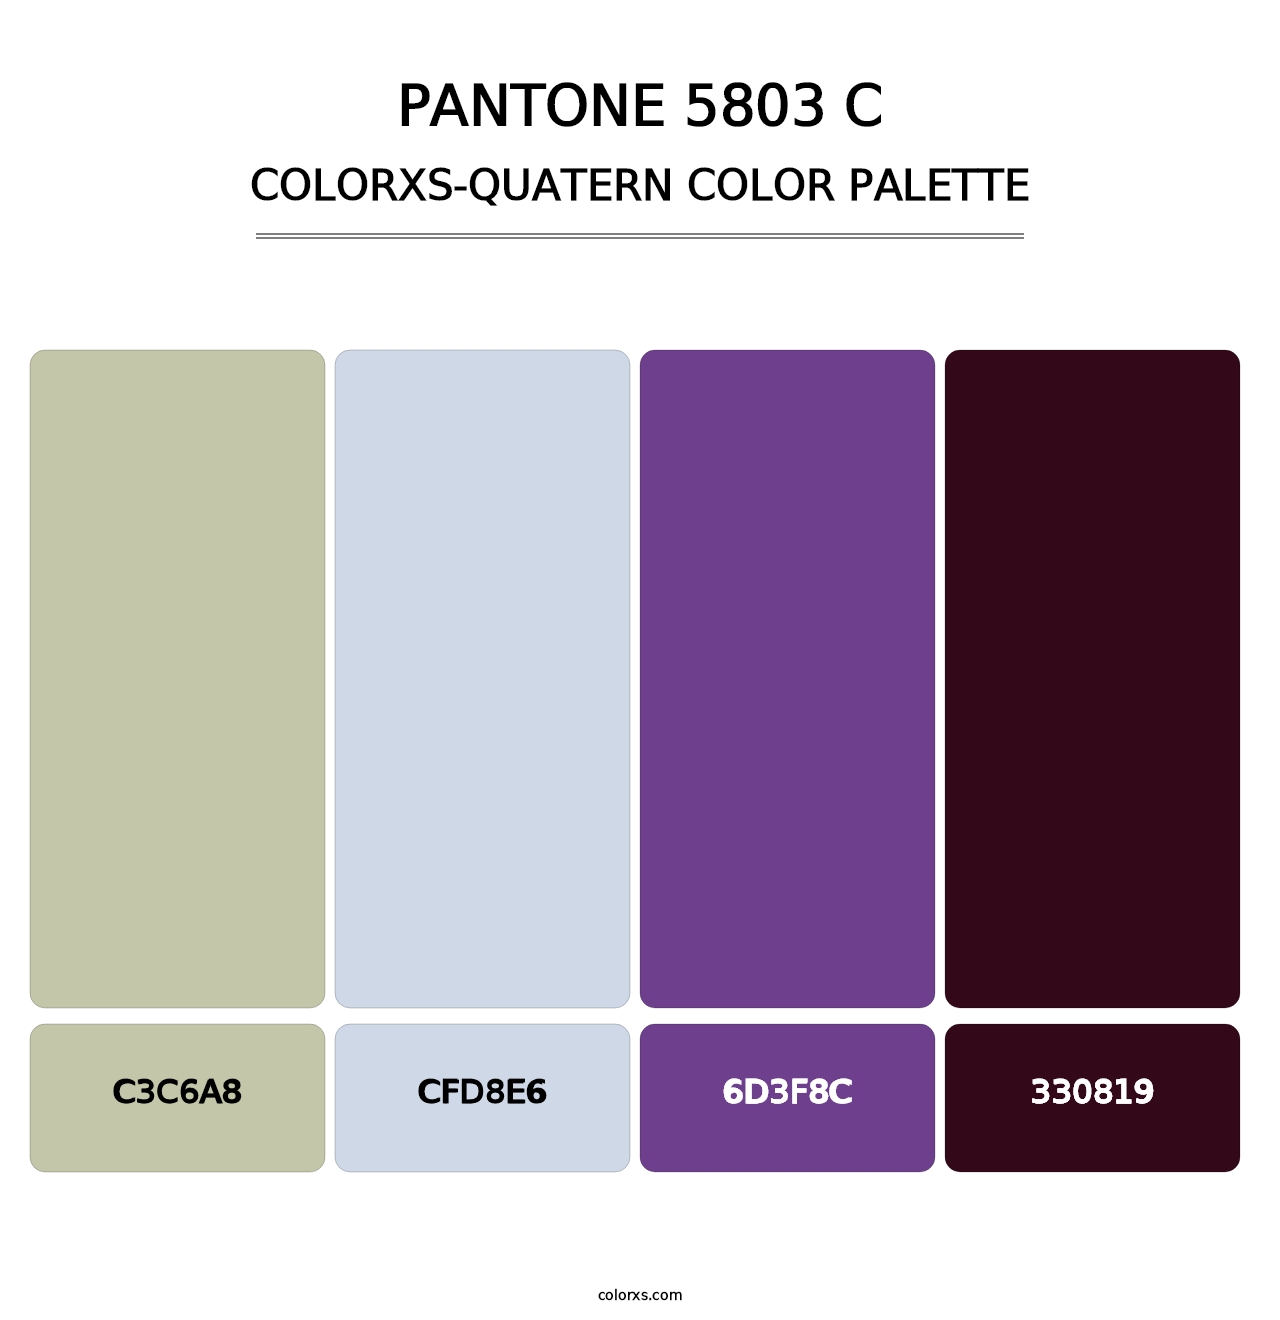 PANTONE 5803 C - Colorxs Quatern Palette